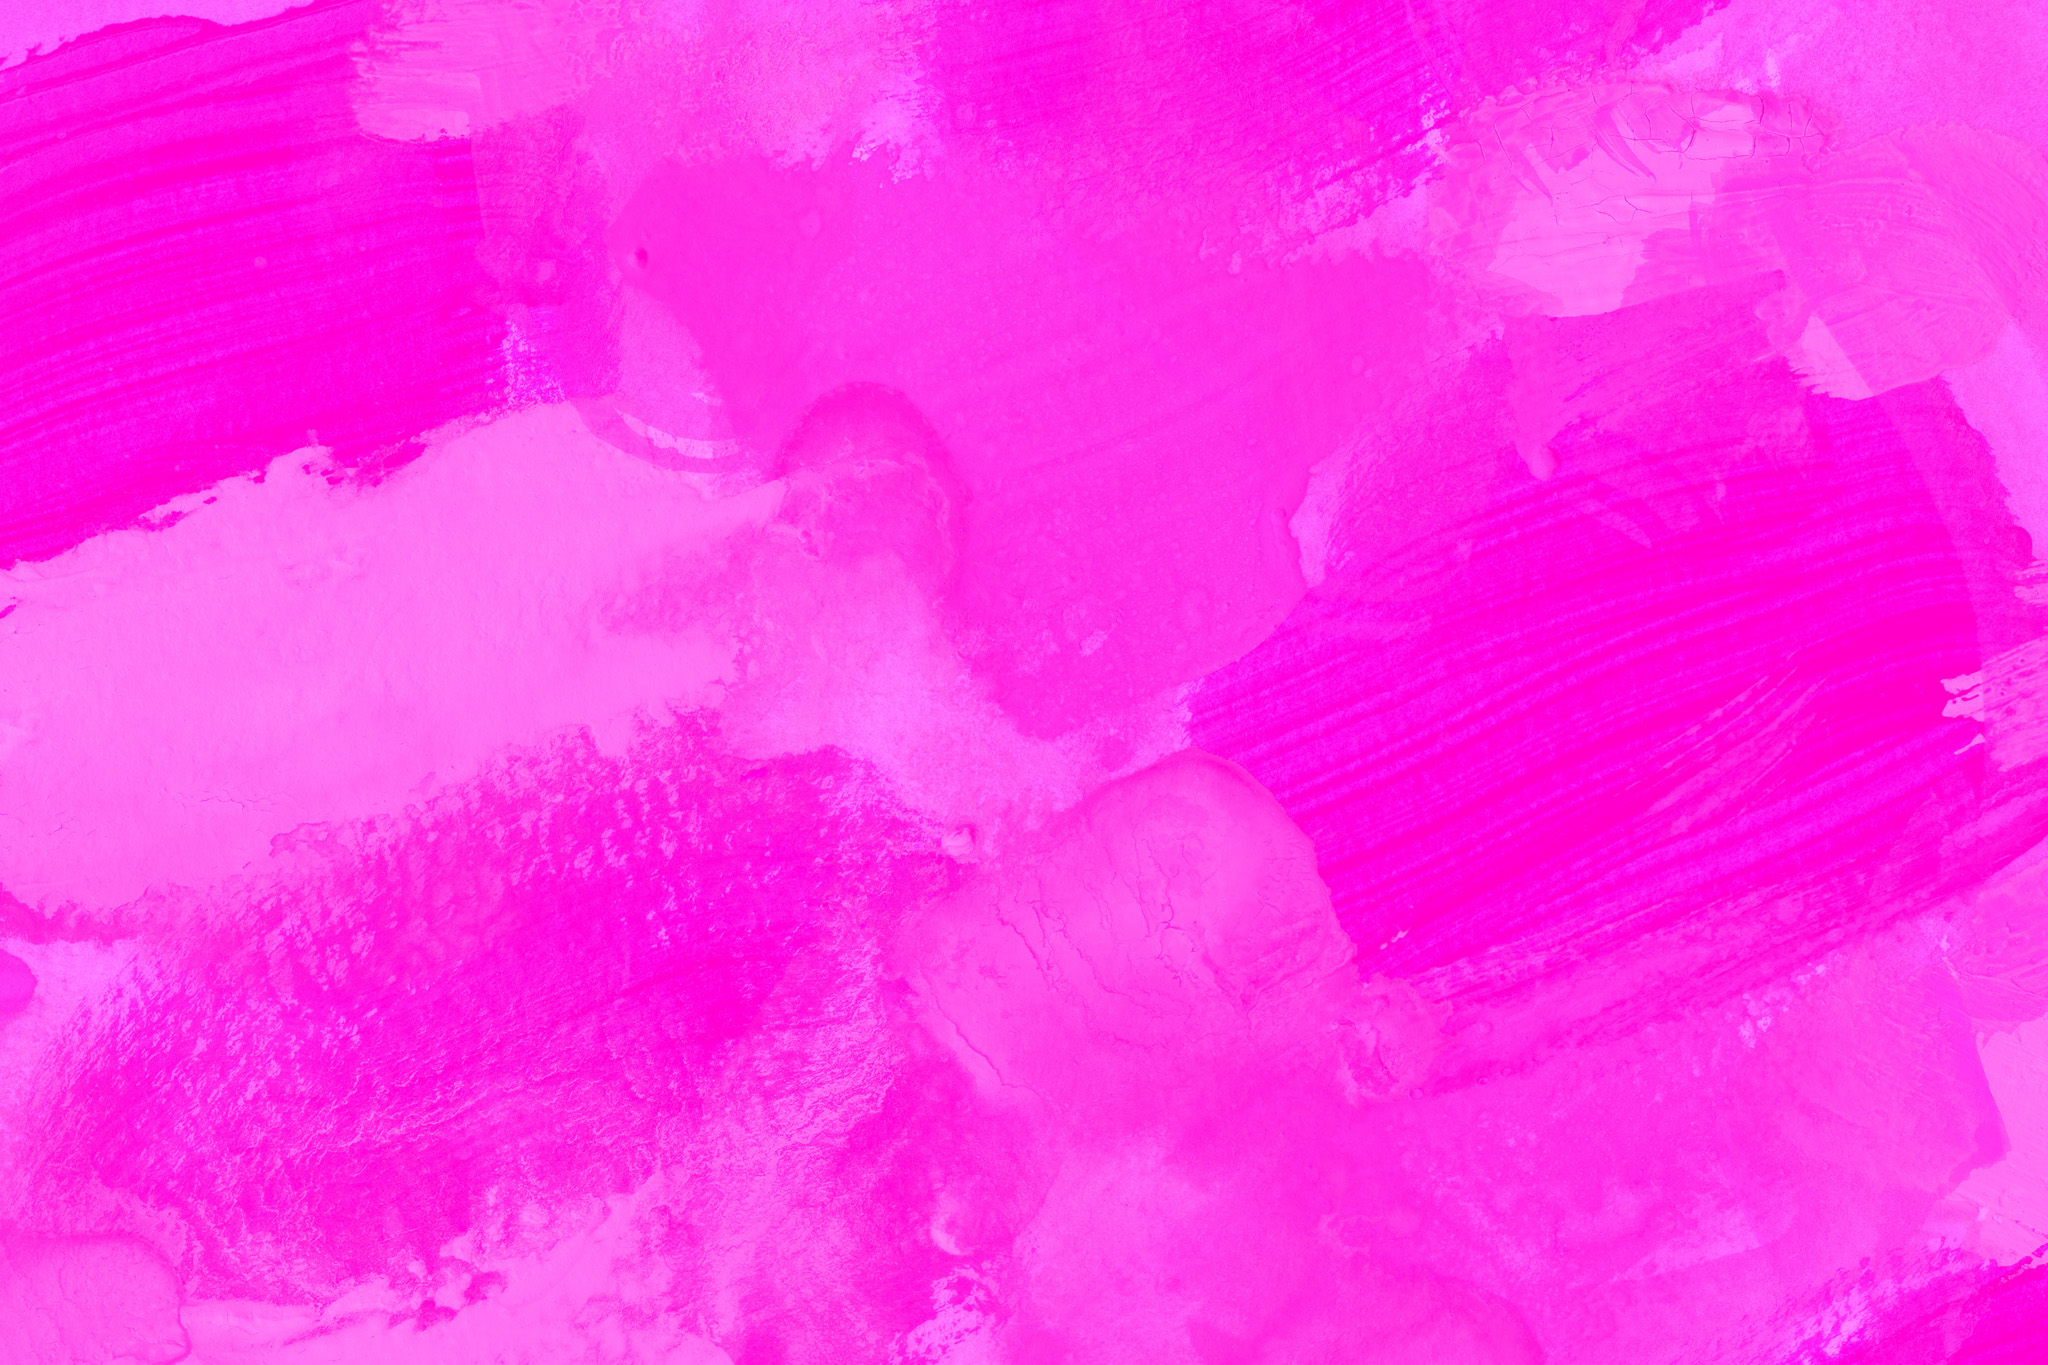 テクスチャ ピンク色の背景素材 の画像素材を無料ダウンロード 1 フリー素材 Beiz Images